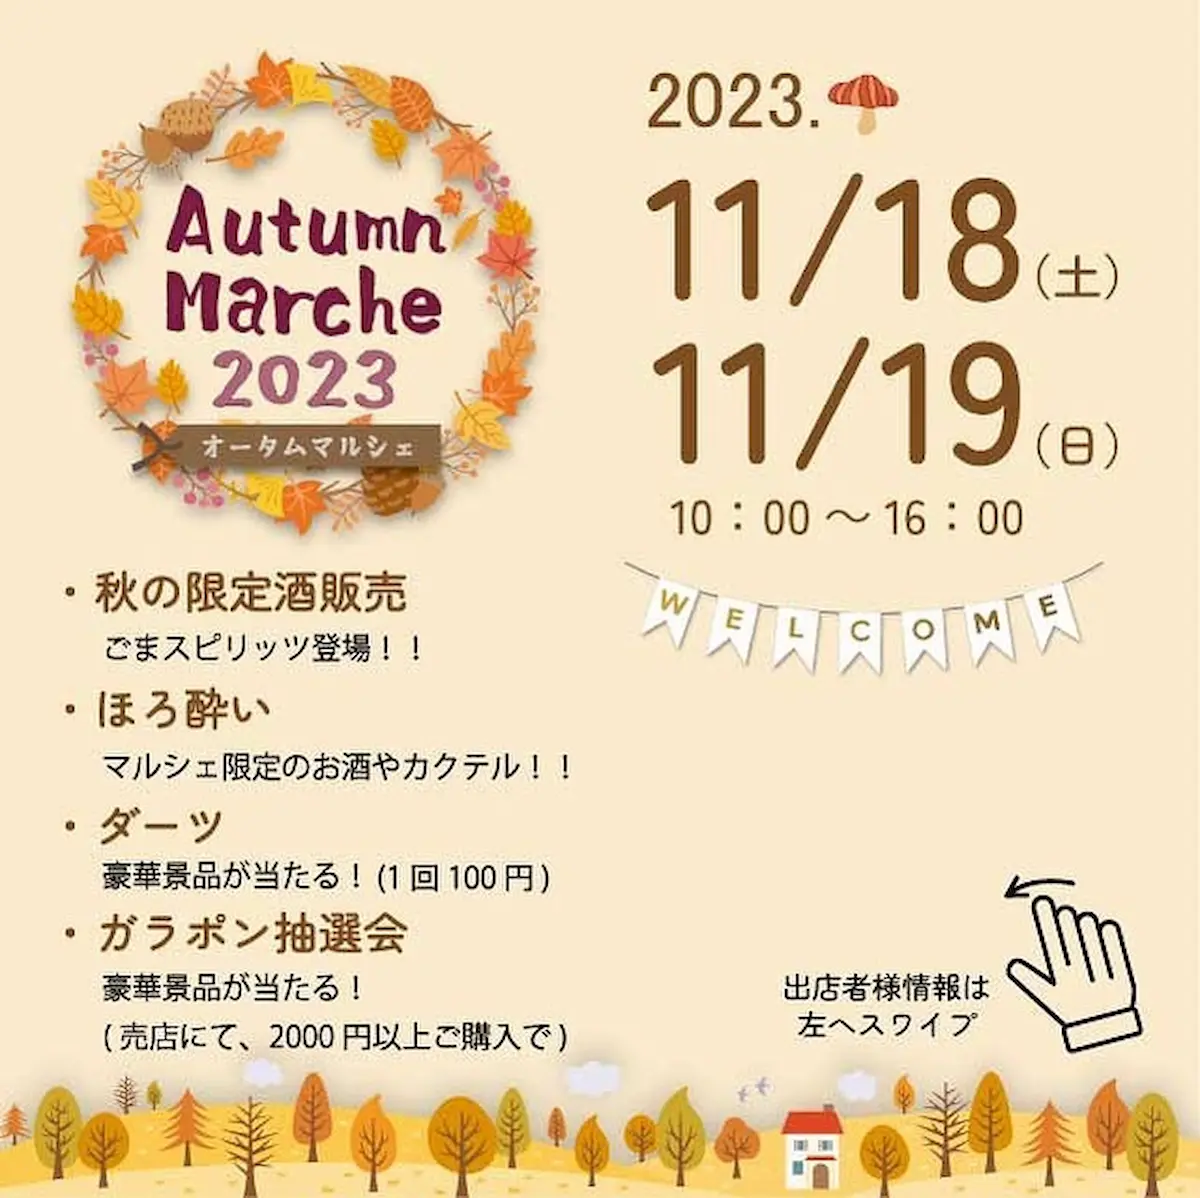 Autumn Marche 2023